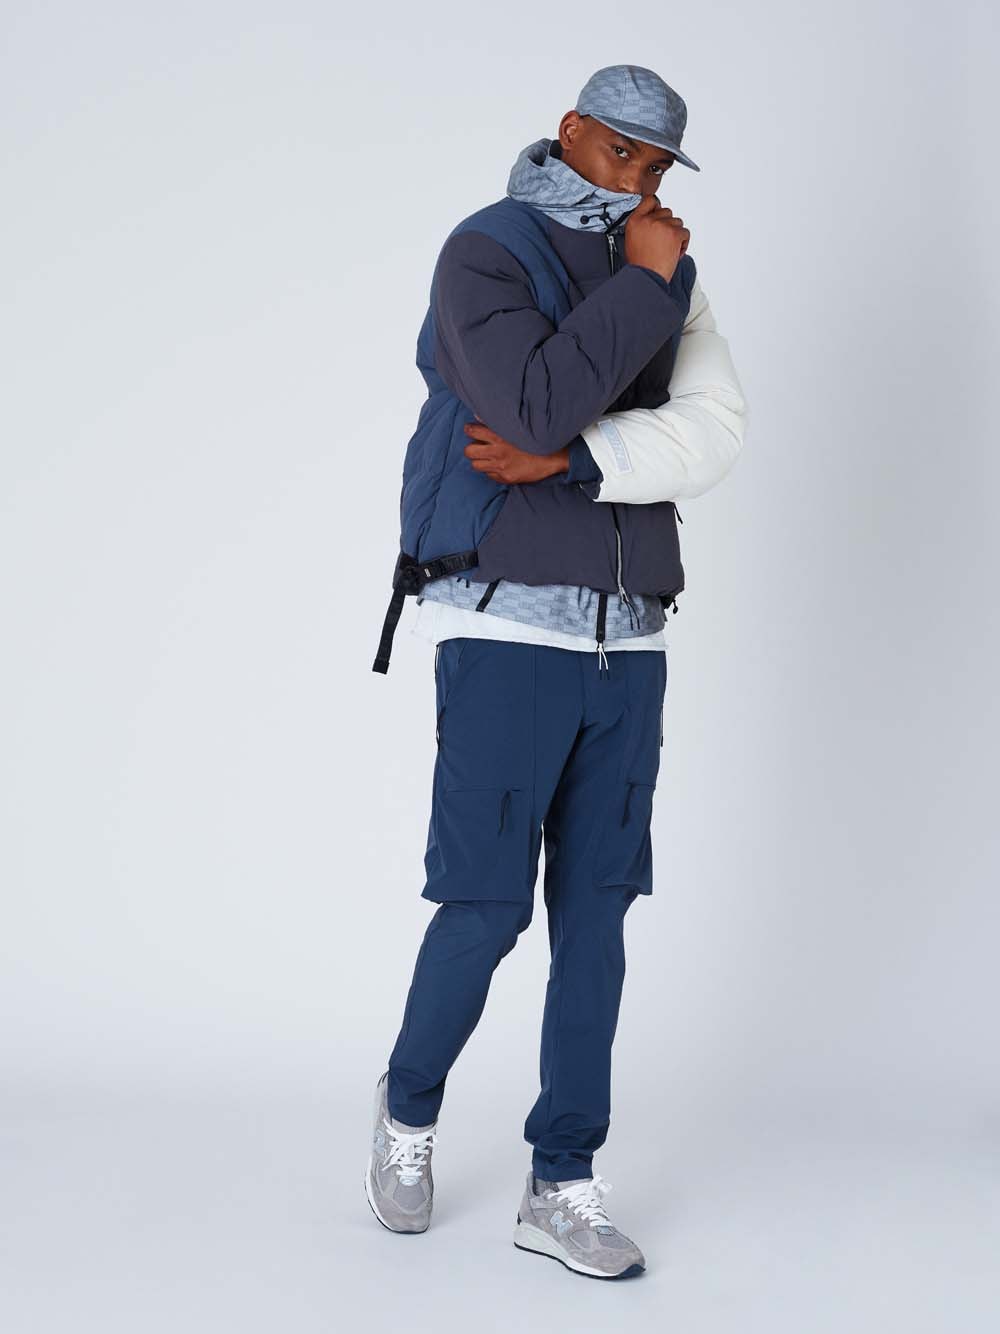 KITH Fall 2019 Lookbook Preview Ronnie Fieg new balance jackets hoodies Stutterheim